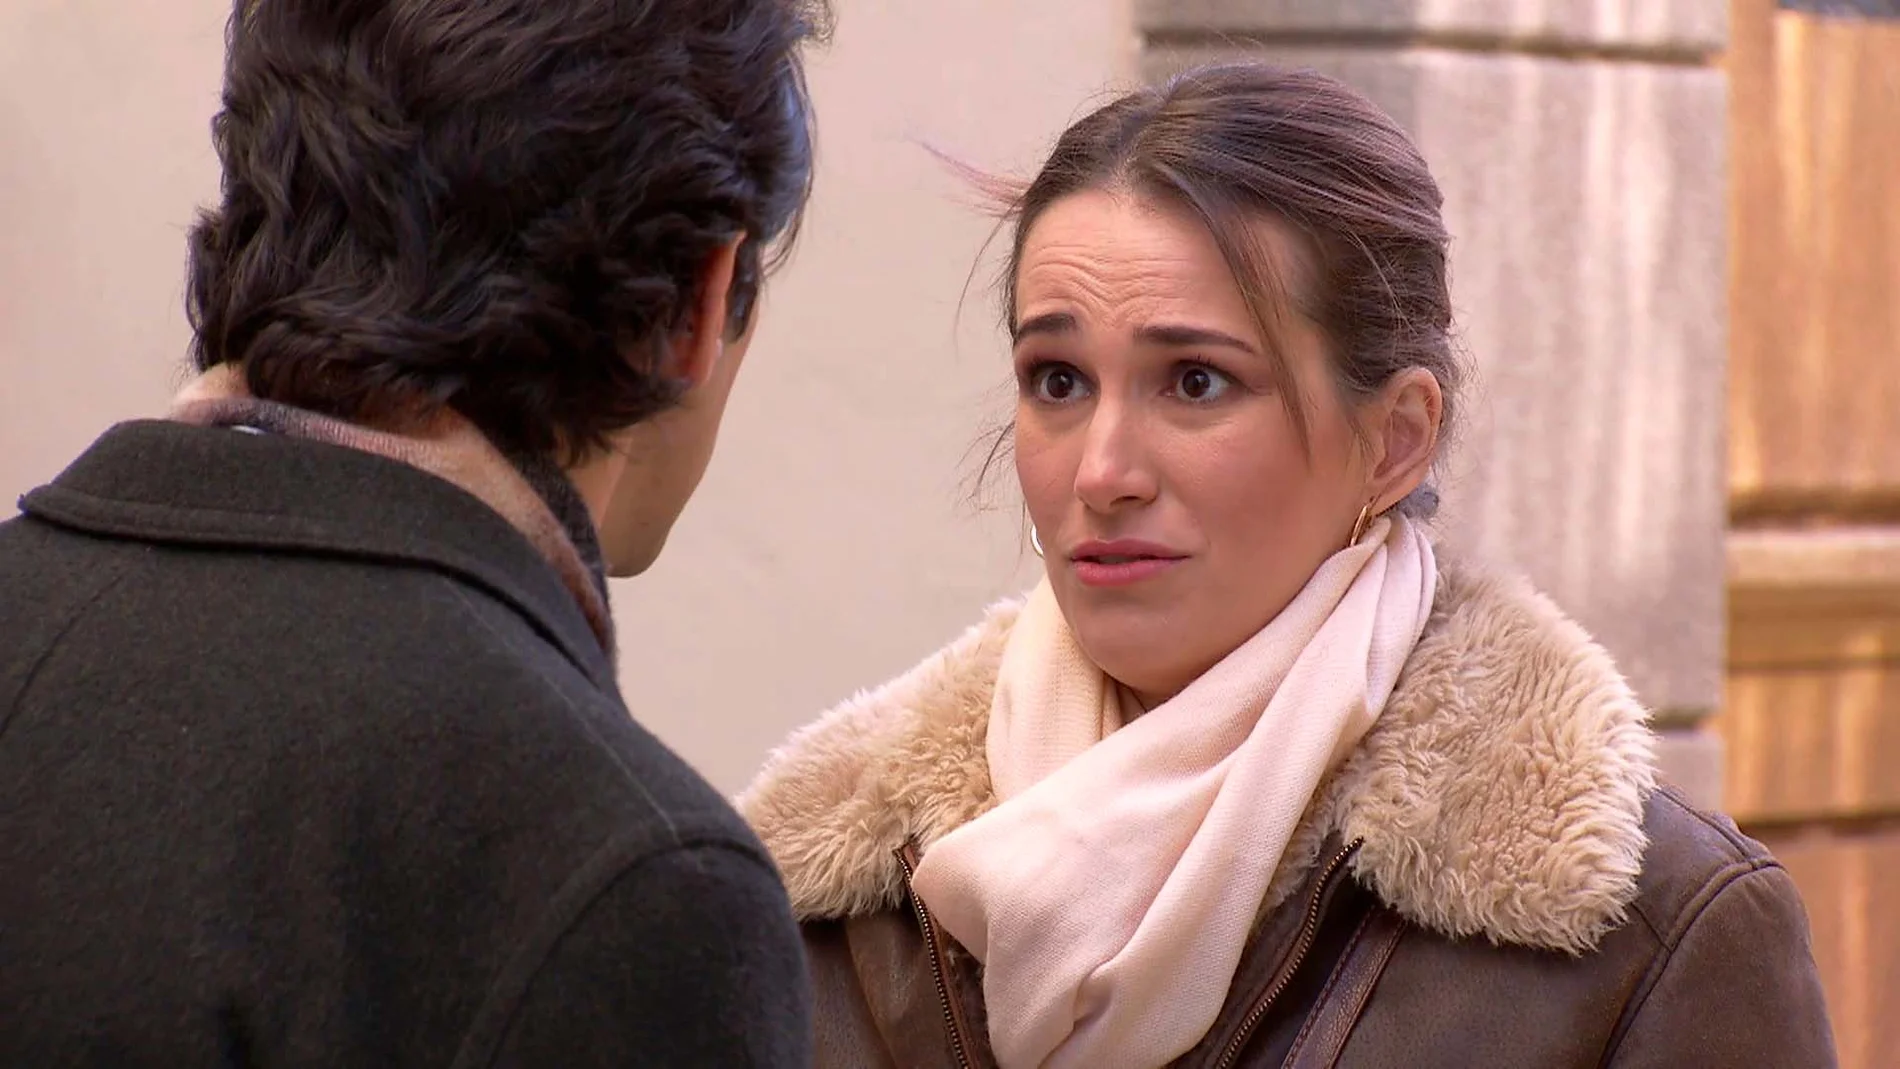 Julieta destroza los sentimientos de Emilio: "Estoy saliendo con alguien"